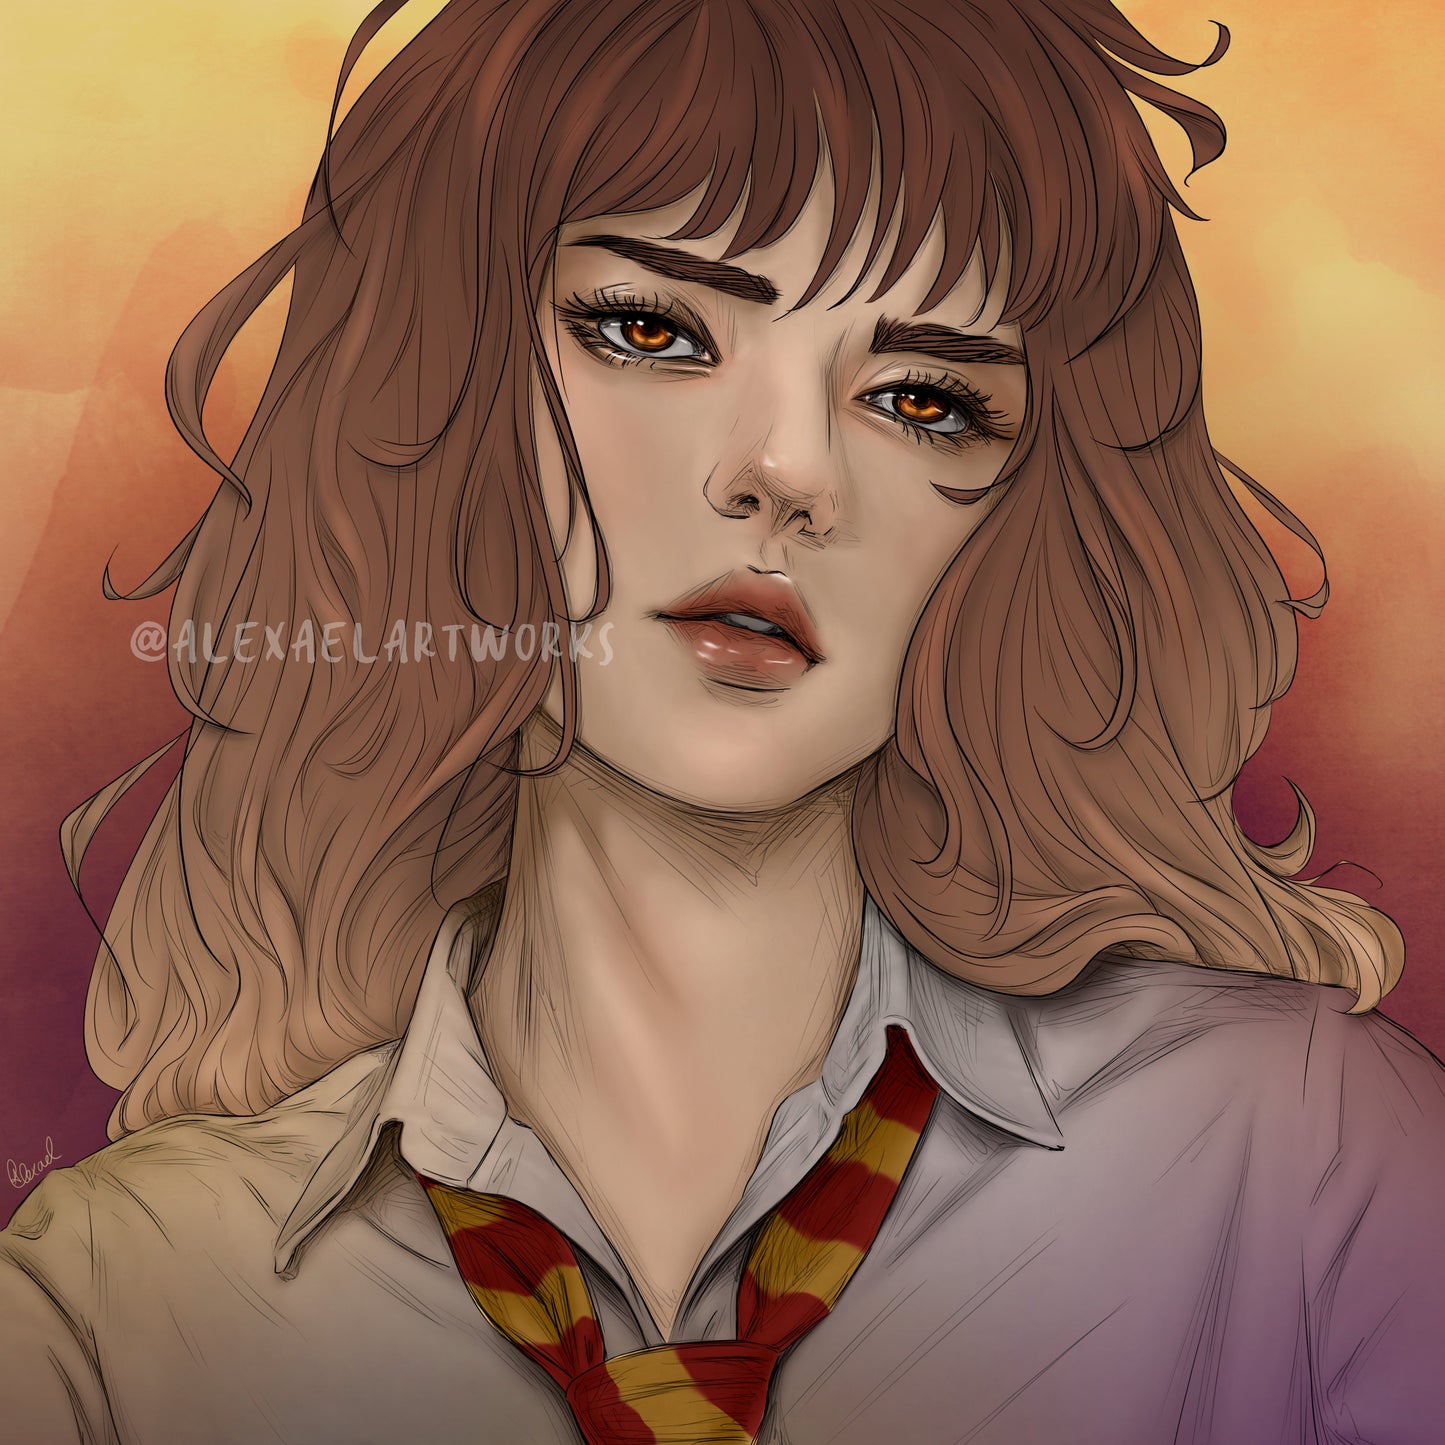 Hermione (detailed close-up portrait)